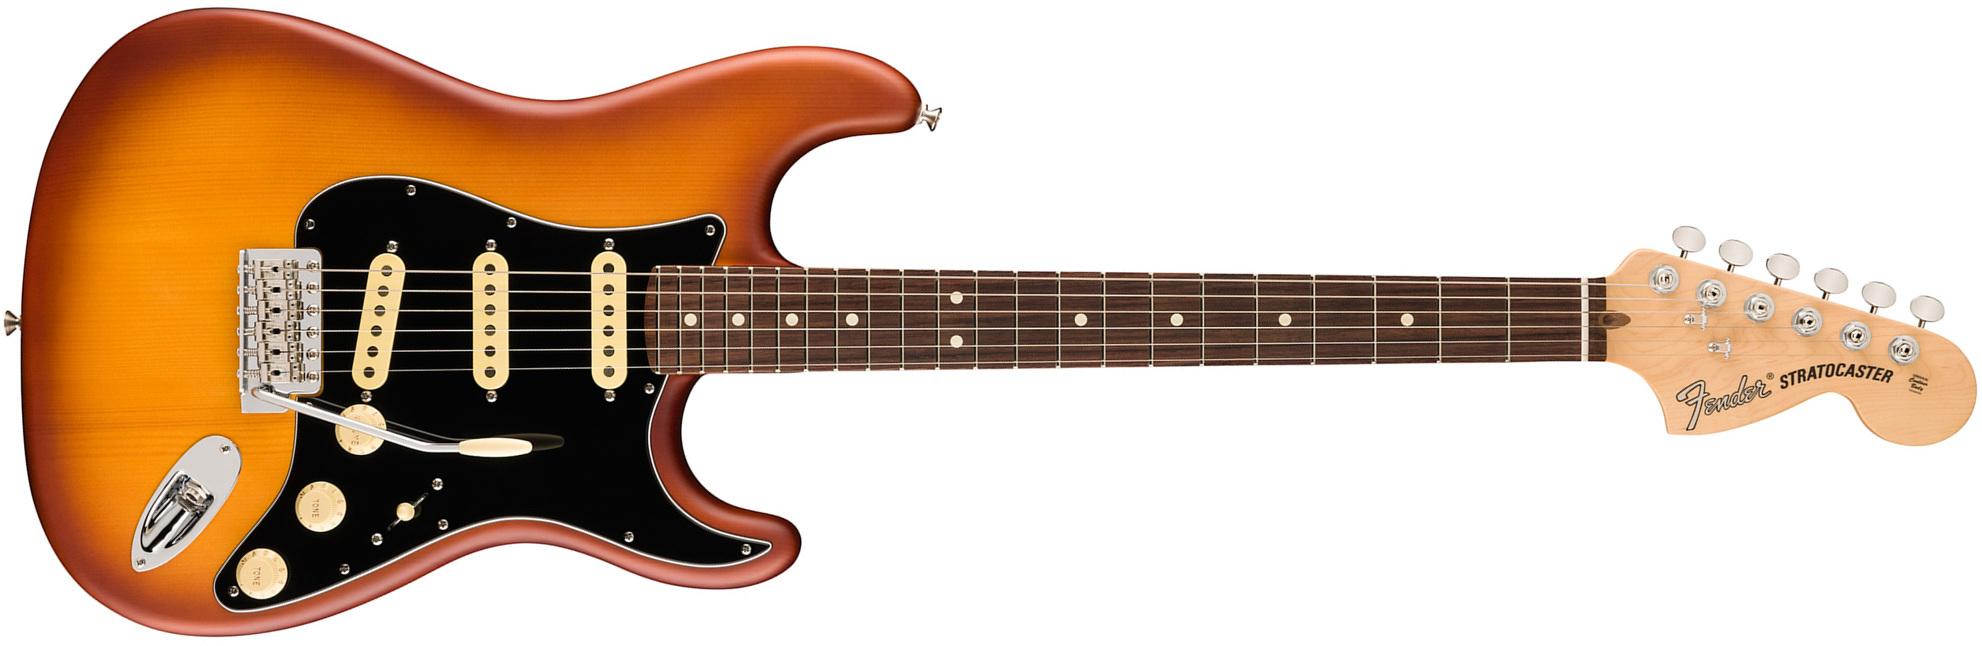 Fender Strat Timber Spruce American Performer Fsr Ltd Usa 3s Rw - Honey Burst - Elektrische gitaar in Str-vorm - Main picture